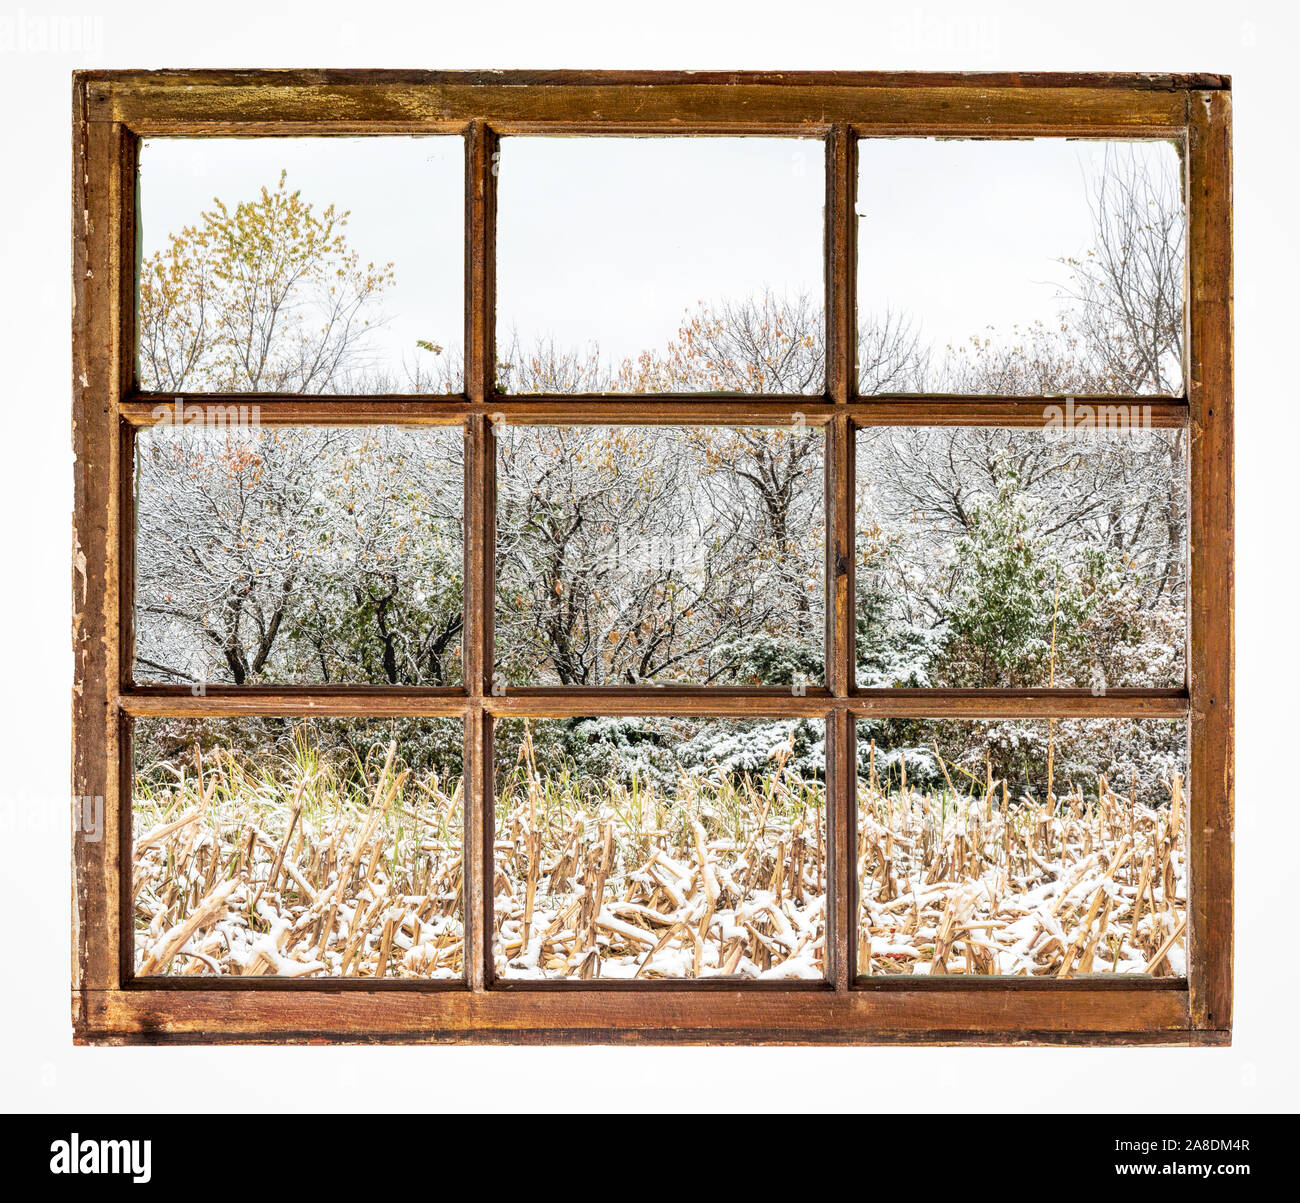 Geerntete mais Feld und Wald im Herbst Landschaft mit einem frischen Schnee wie aus einem Jahrgang Schiebefenster gesehen Stockfoto